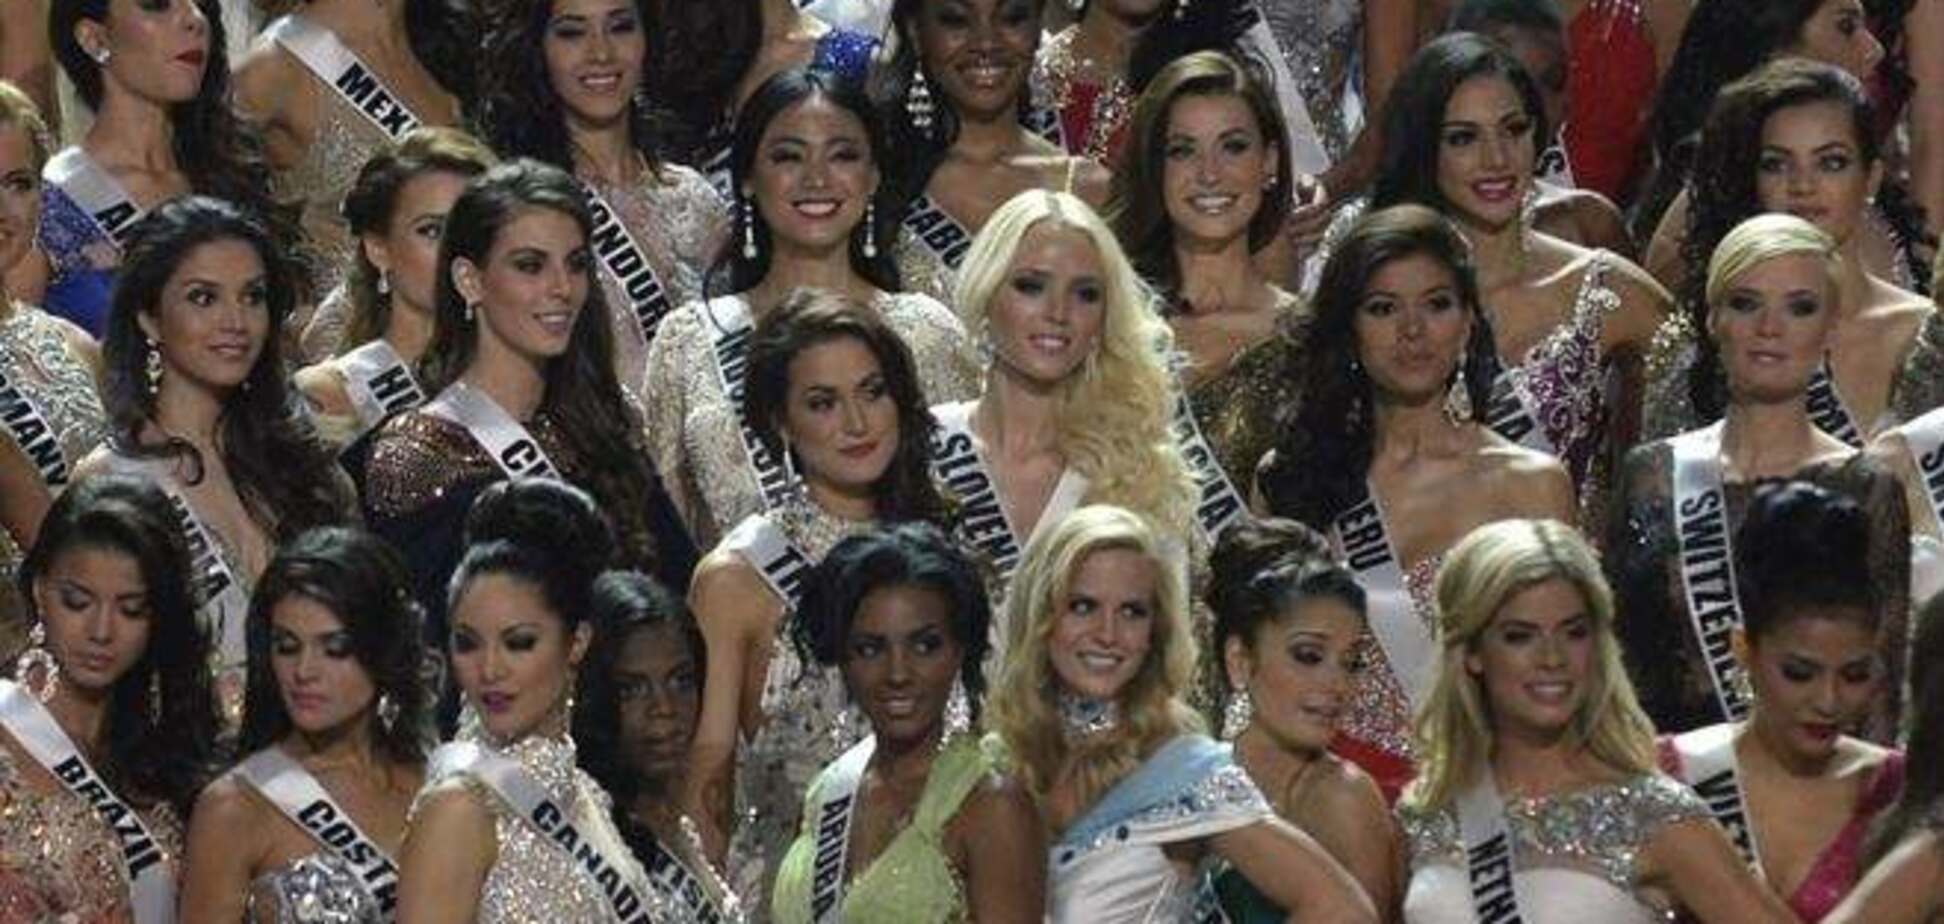 На конкурсе Miss Universe девушки разделись